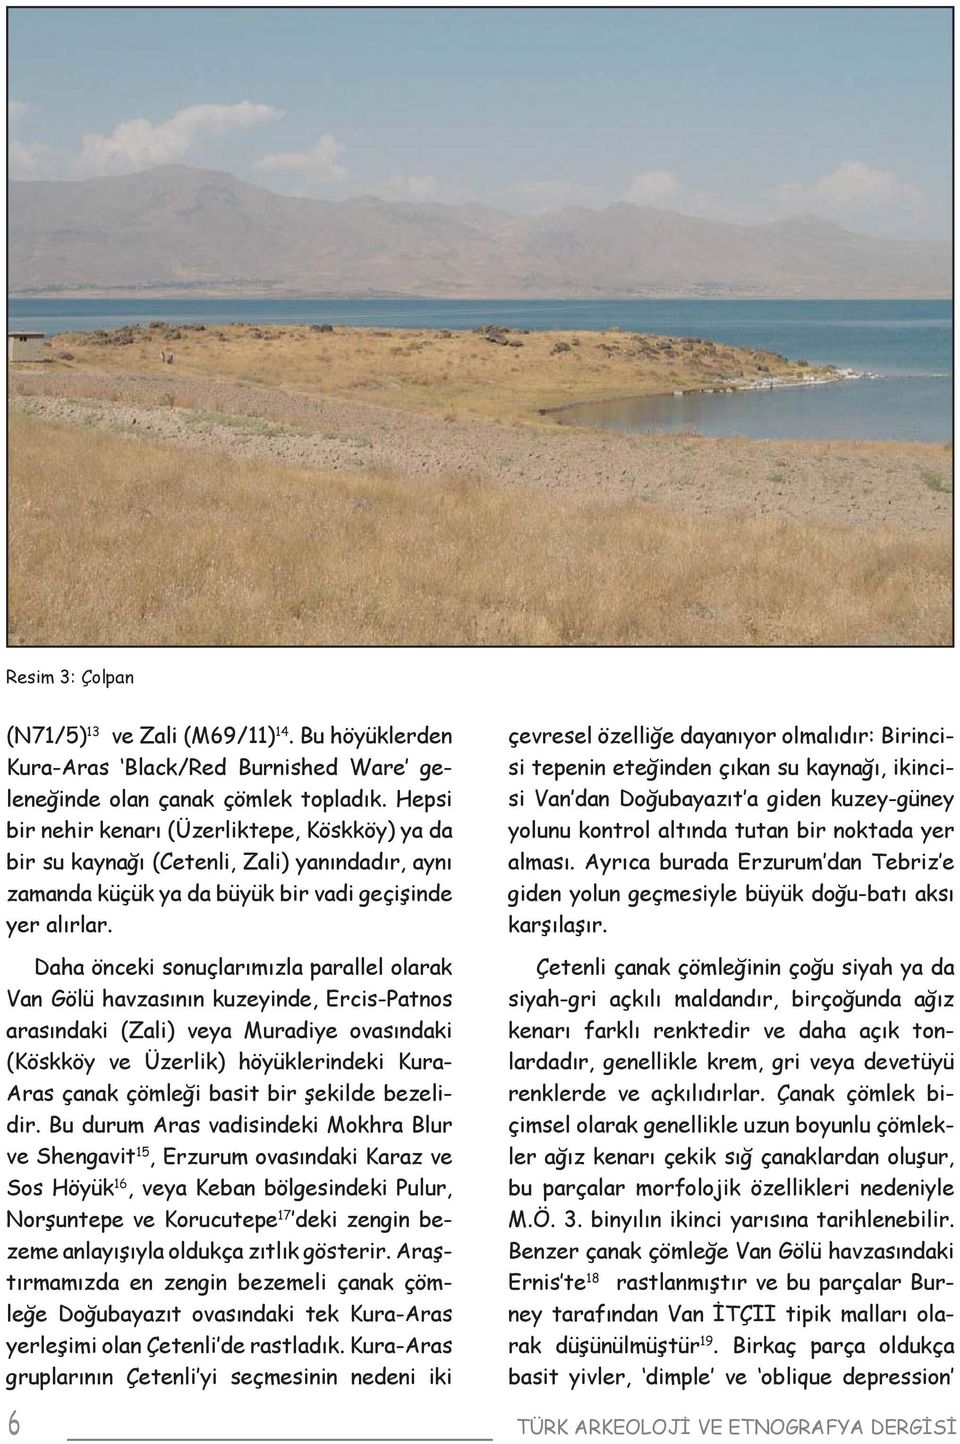 Daha önceki sonuçlarımızla parallel olarak Van Gölü havzasının kuzeyinde, Ercis-Patnos arasındaki (Zali) veya Muradiye ovasındaki (Köskköy ve Üzerlik) höyüklerindeki Kura- Aras çanak çömleği basit